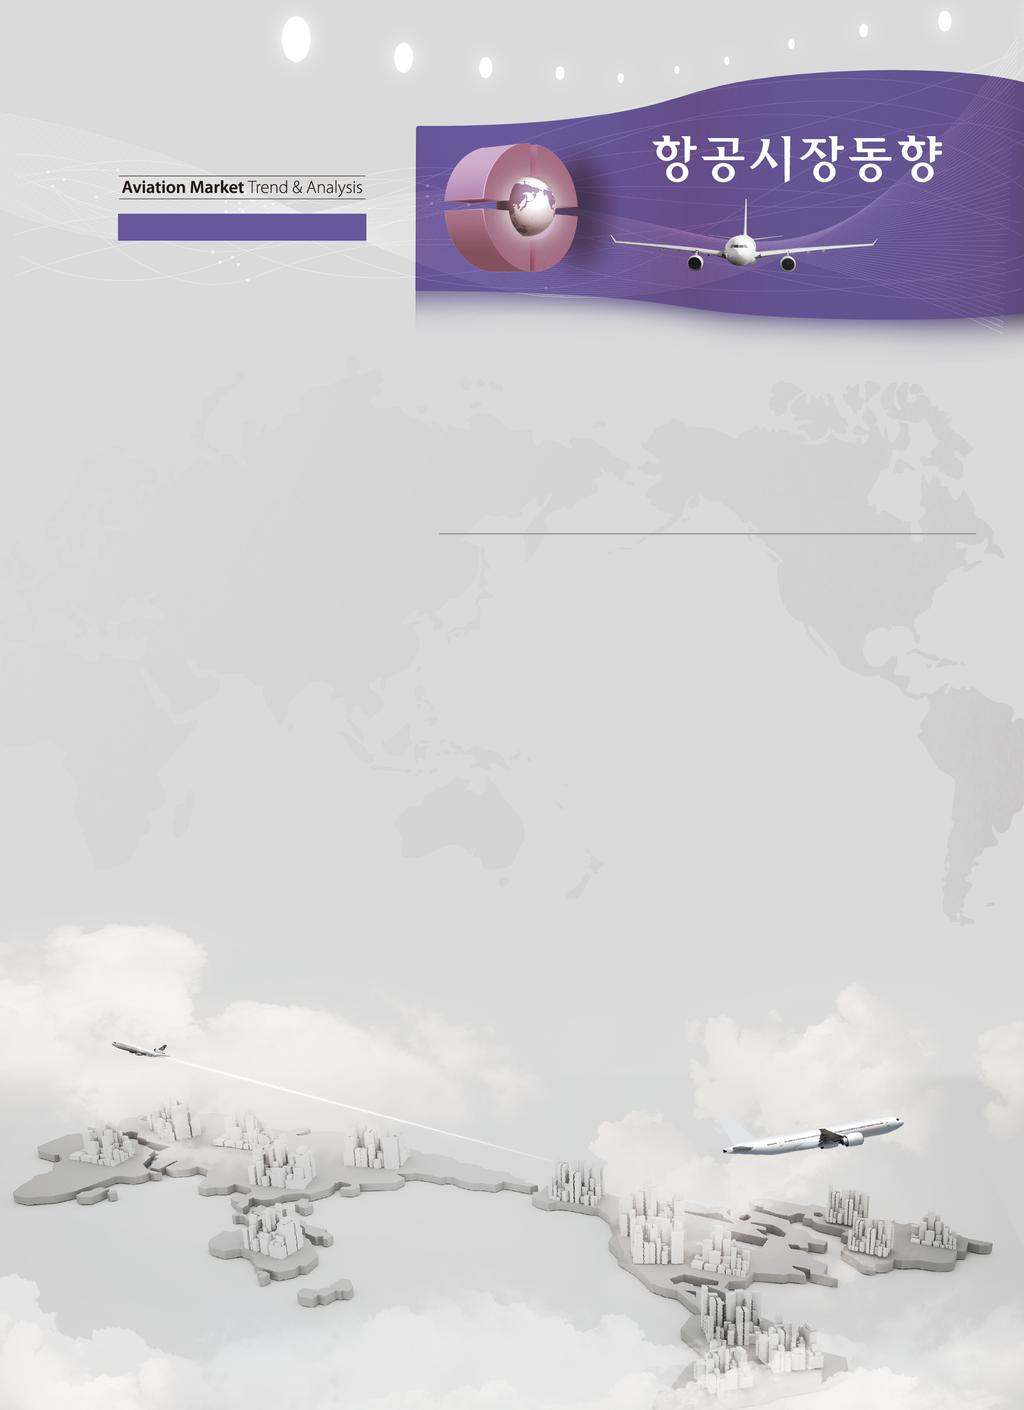 통권제 42 호 (2015.12) Ⅱ. 글로벌항공운송시장 1. 글로벌항공여객동향 / 47 1.1 IATA 글로벌항공운송동향 (10 월 ) / 47 1.2 IATA 프리미엄클래스시장동향 (10 월 ) / 53 1.